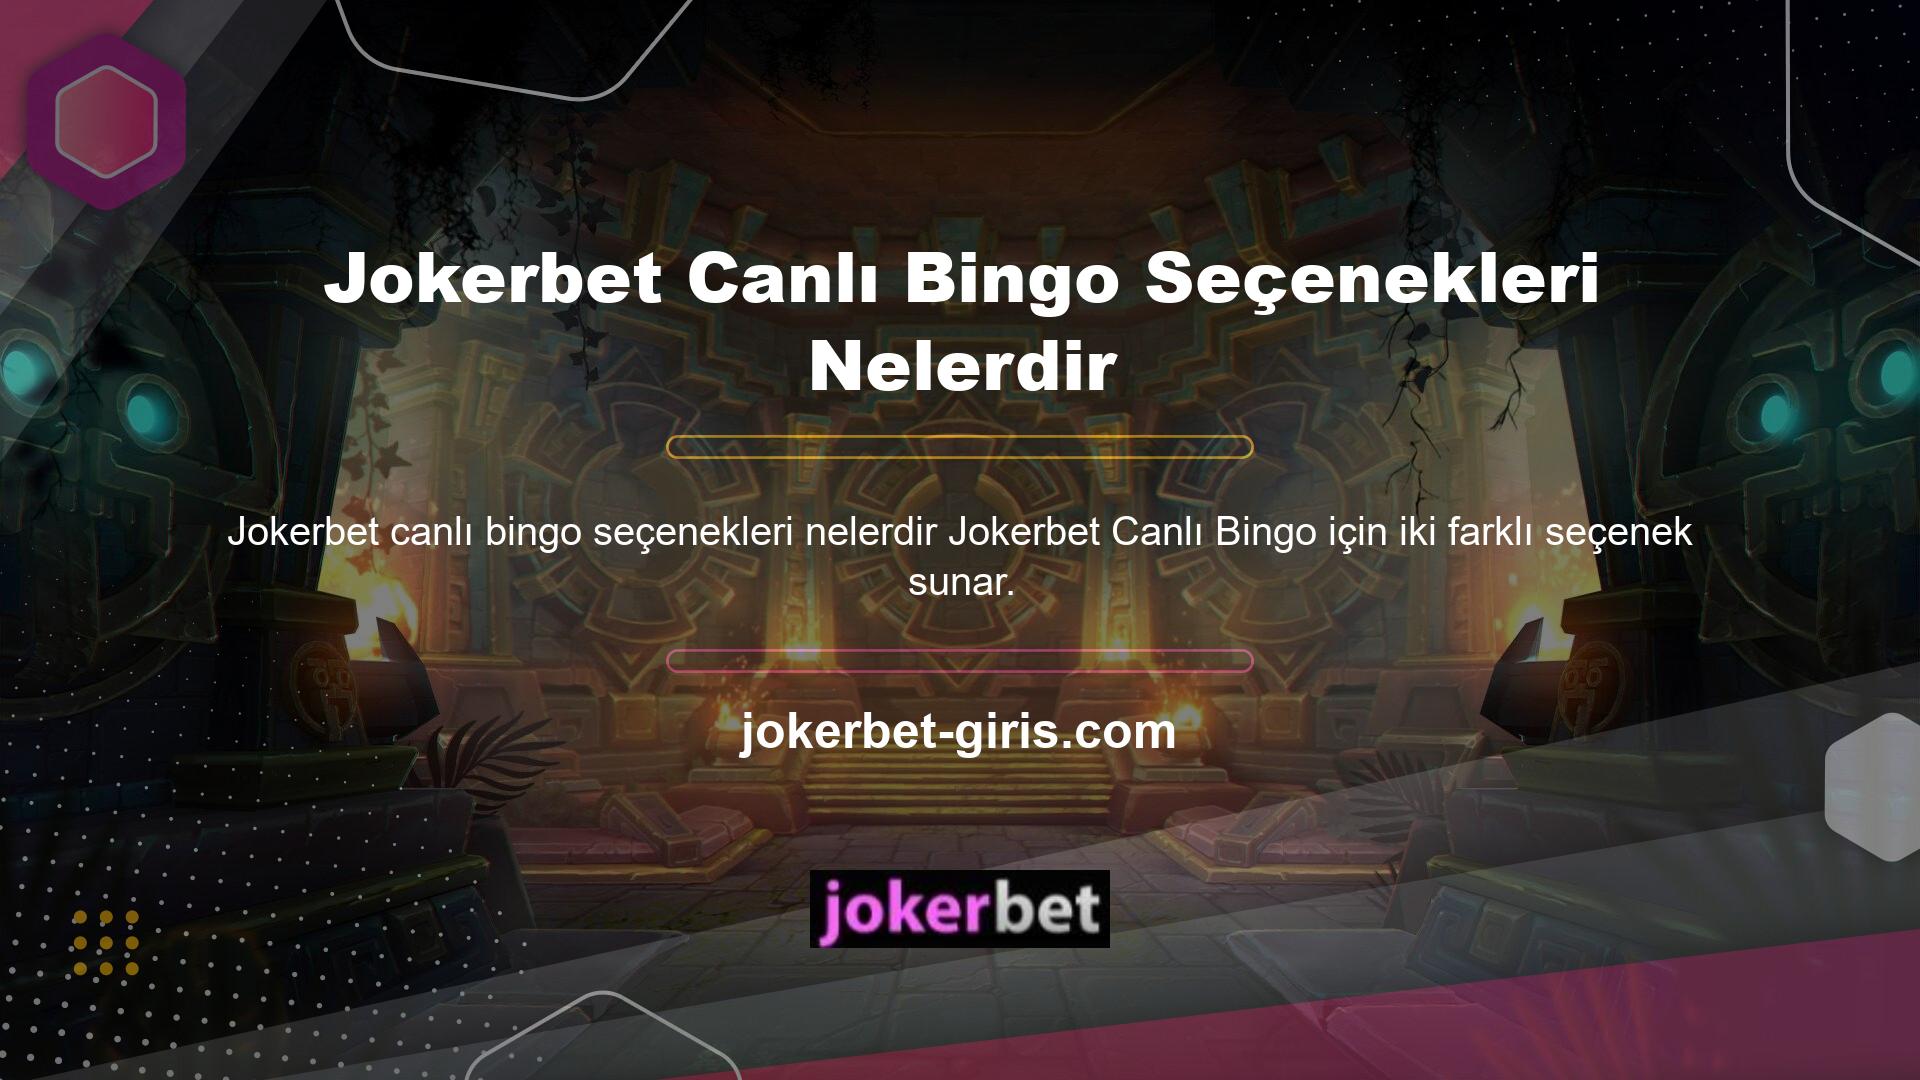 Site, çeşitli bingo oyunları sunmaktadır